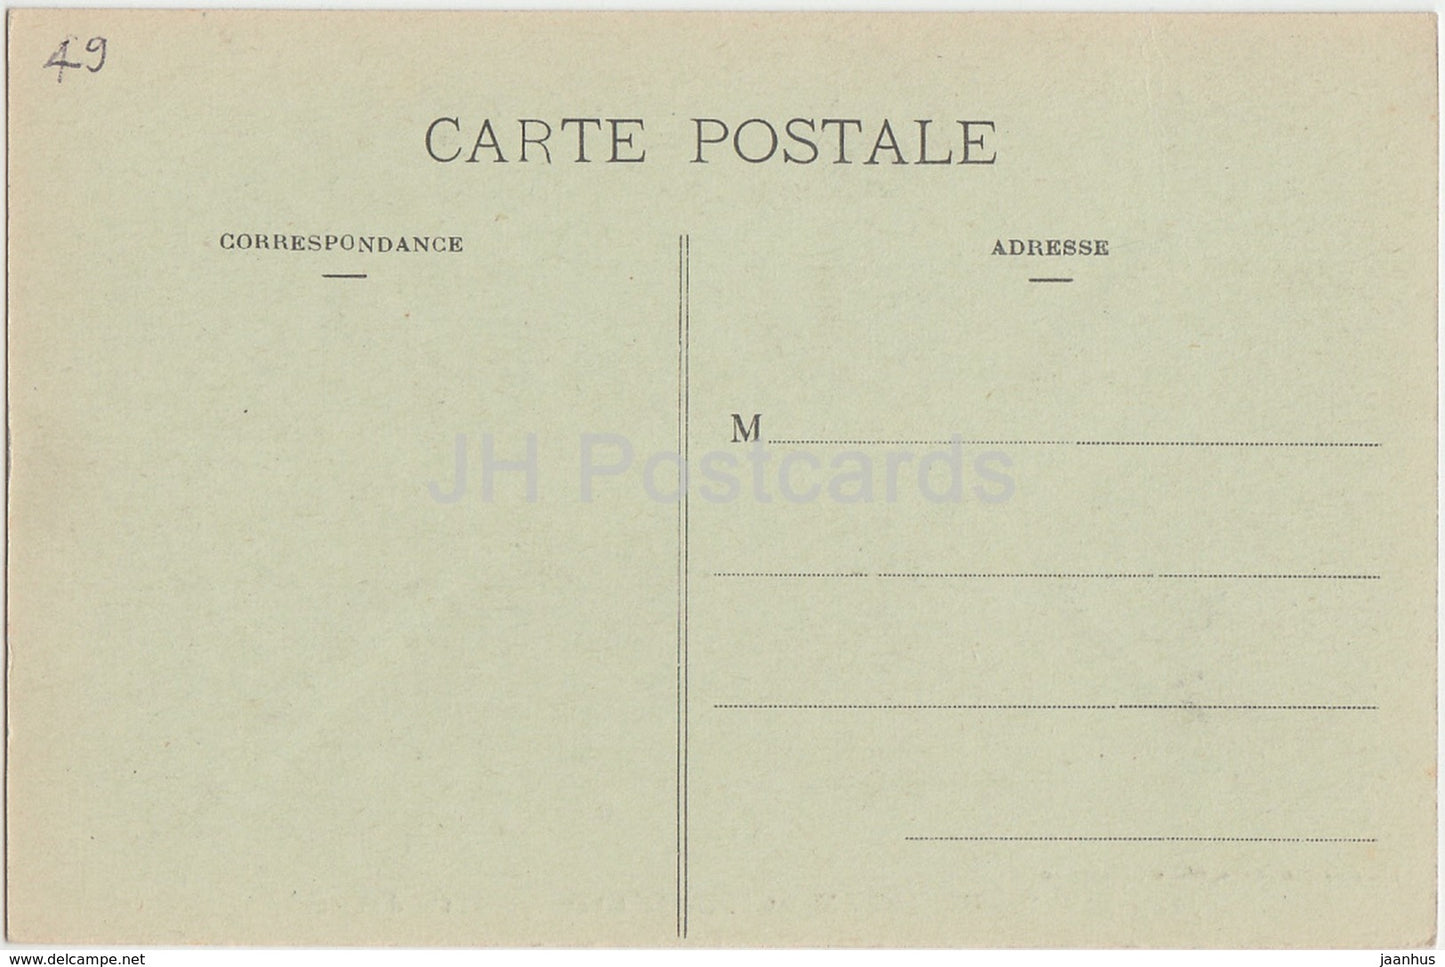 Beaupreau - Le Chateau - Porte d'entree - castle - 451 - old postcard - France - unused